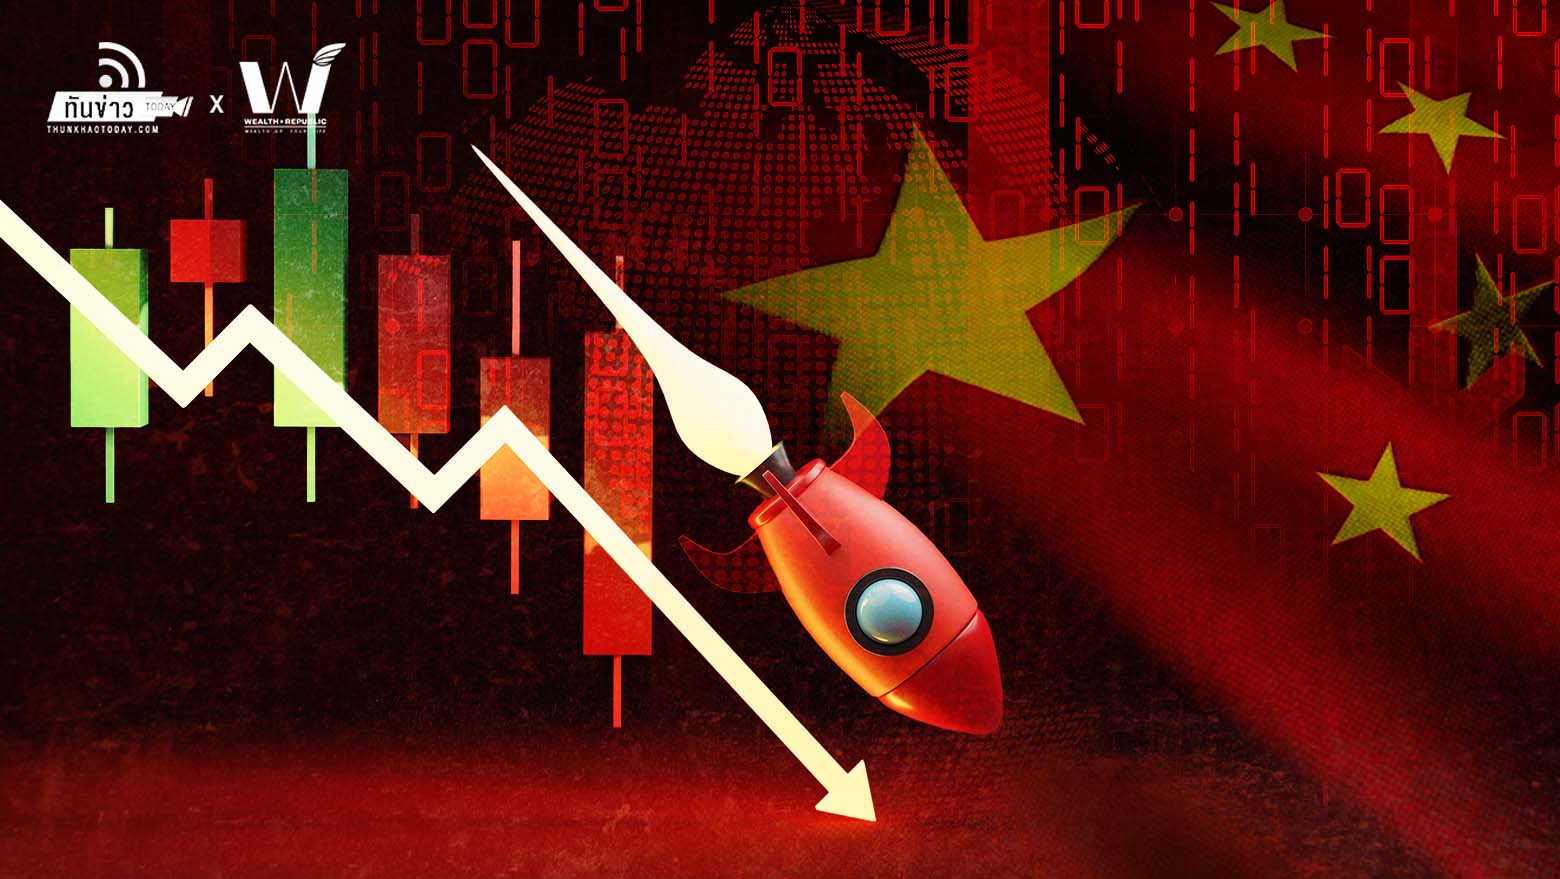 ตลาดหุ้นจีนร่วงหนักในวันจันทร์ กังวล สี จิ้นผิง ต้านธุรกิจยักษ์ใหญ่ของประเทศรวมถึงเจ้าของ